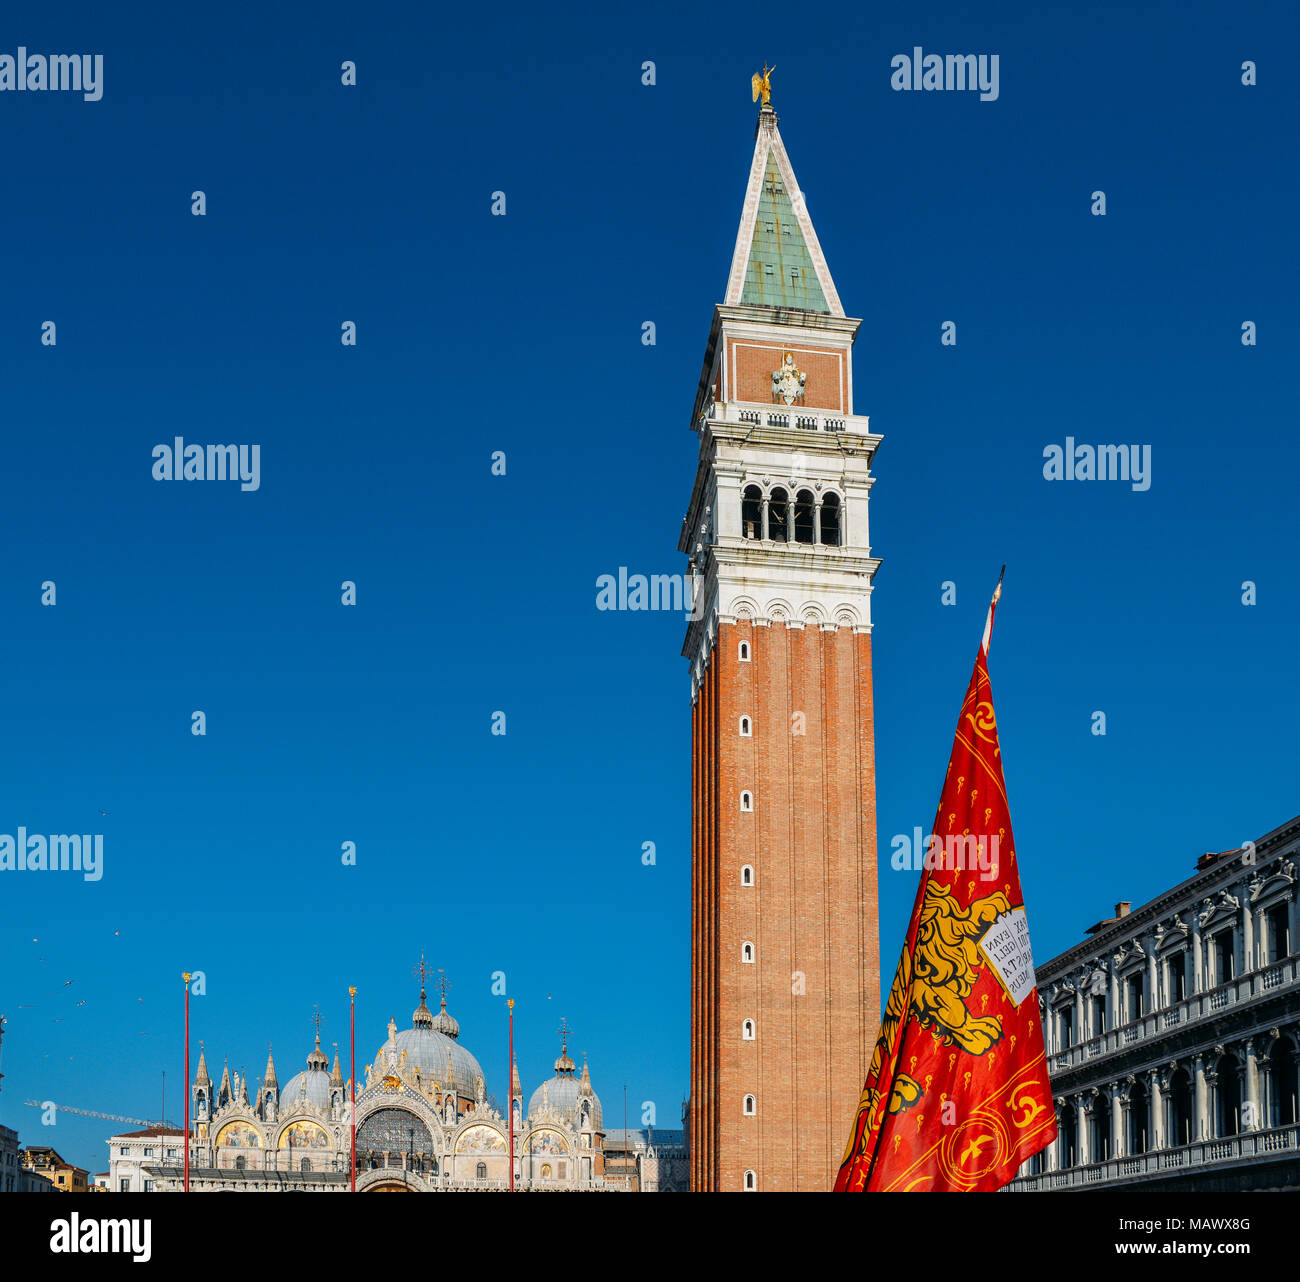 León alado de San Marcos de Venecia, la bandera en la plaza de San Marcos de Venecia con el Campanile de San Marcos torre. Foto de stock